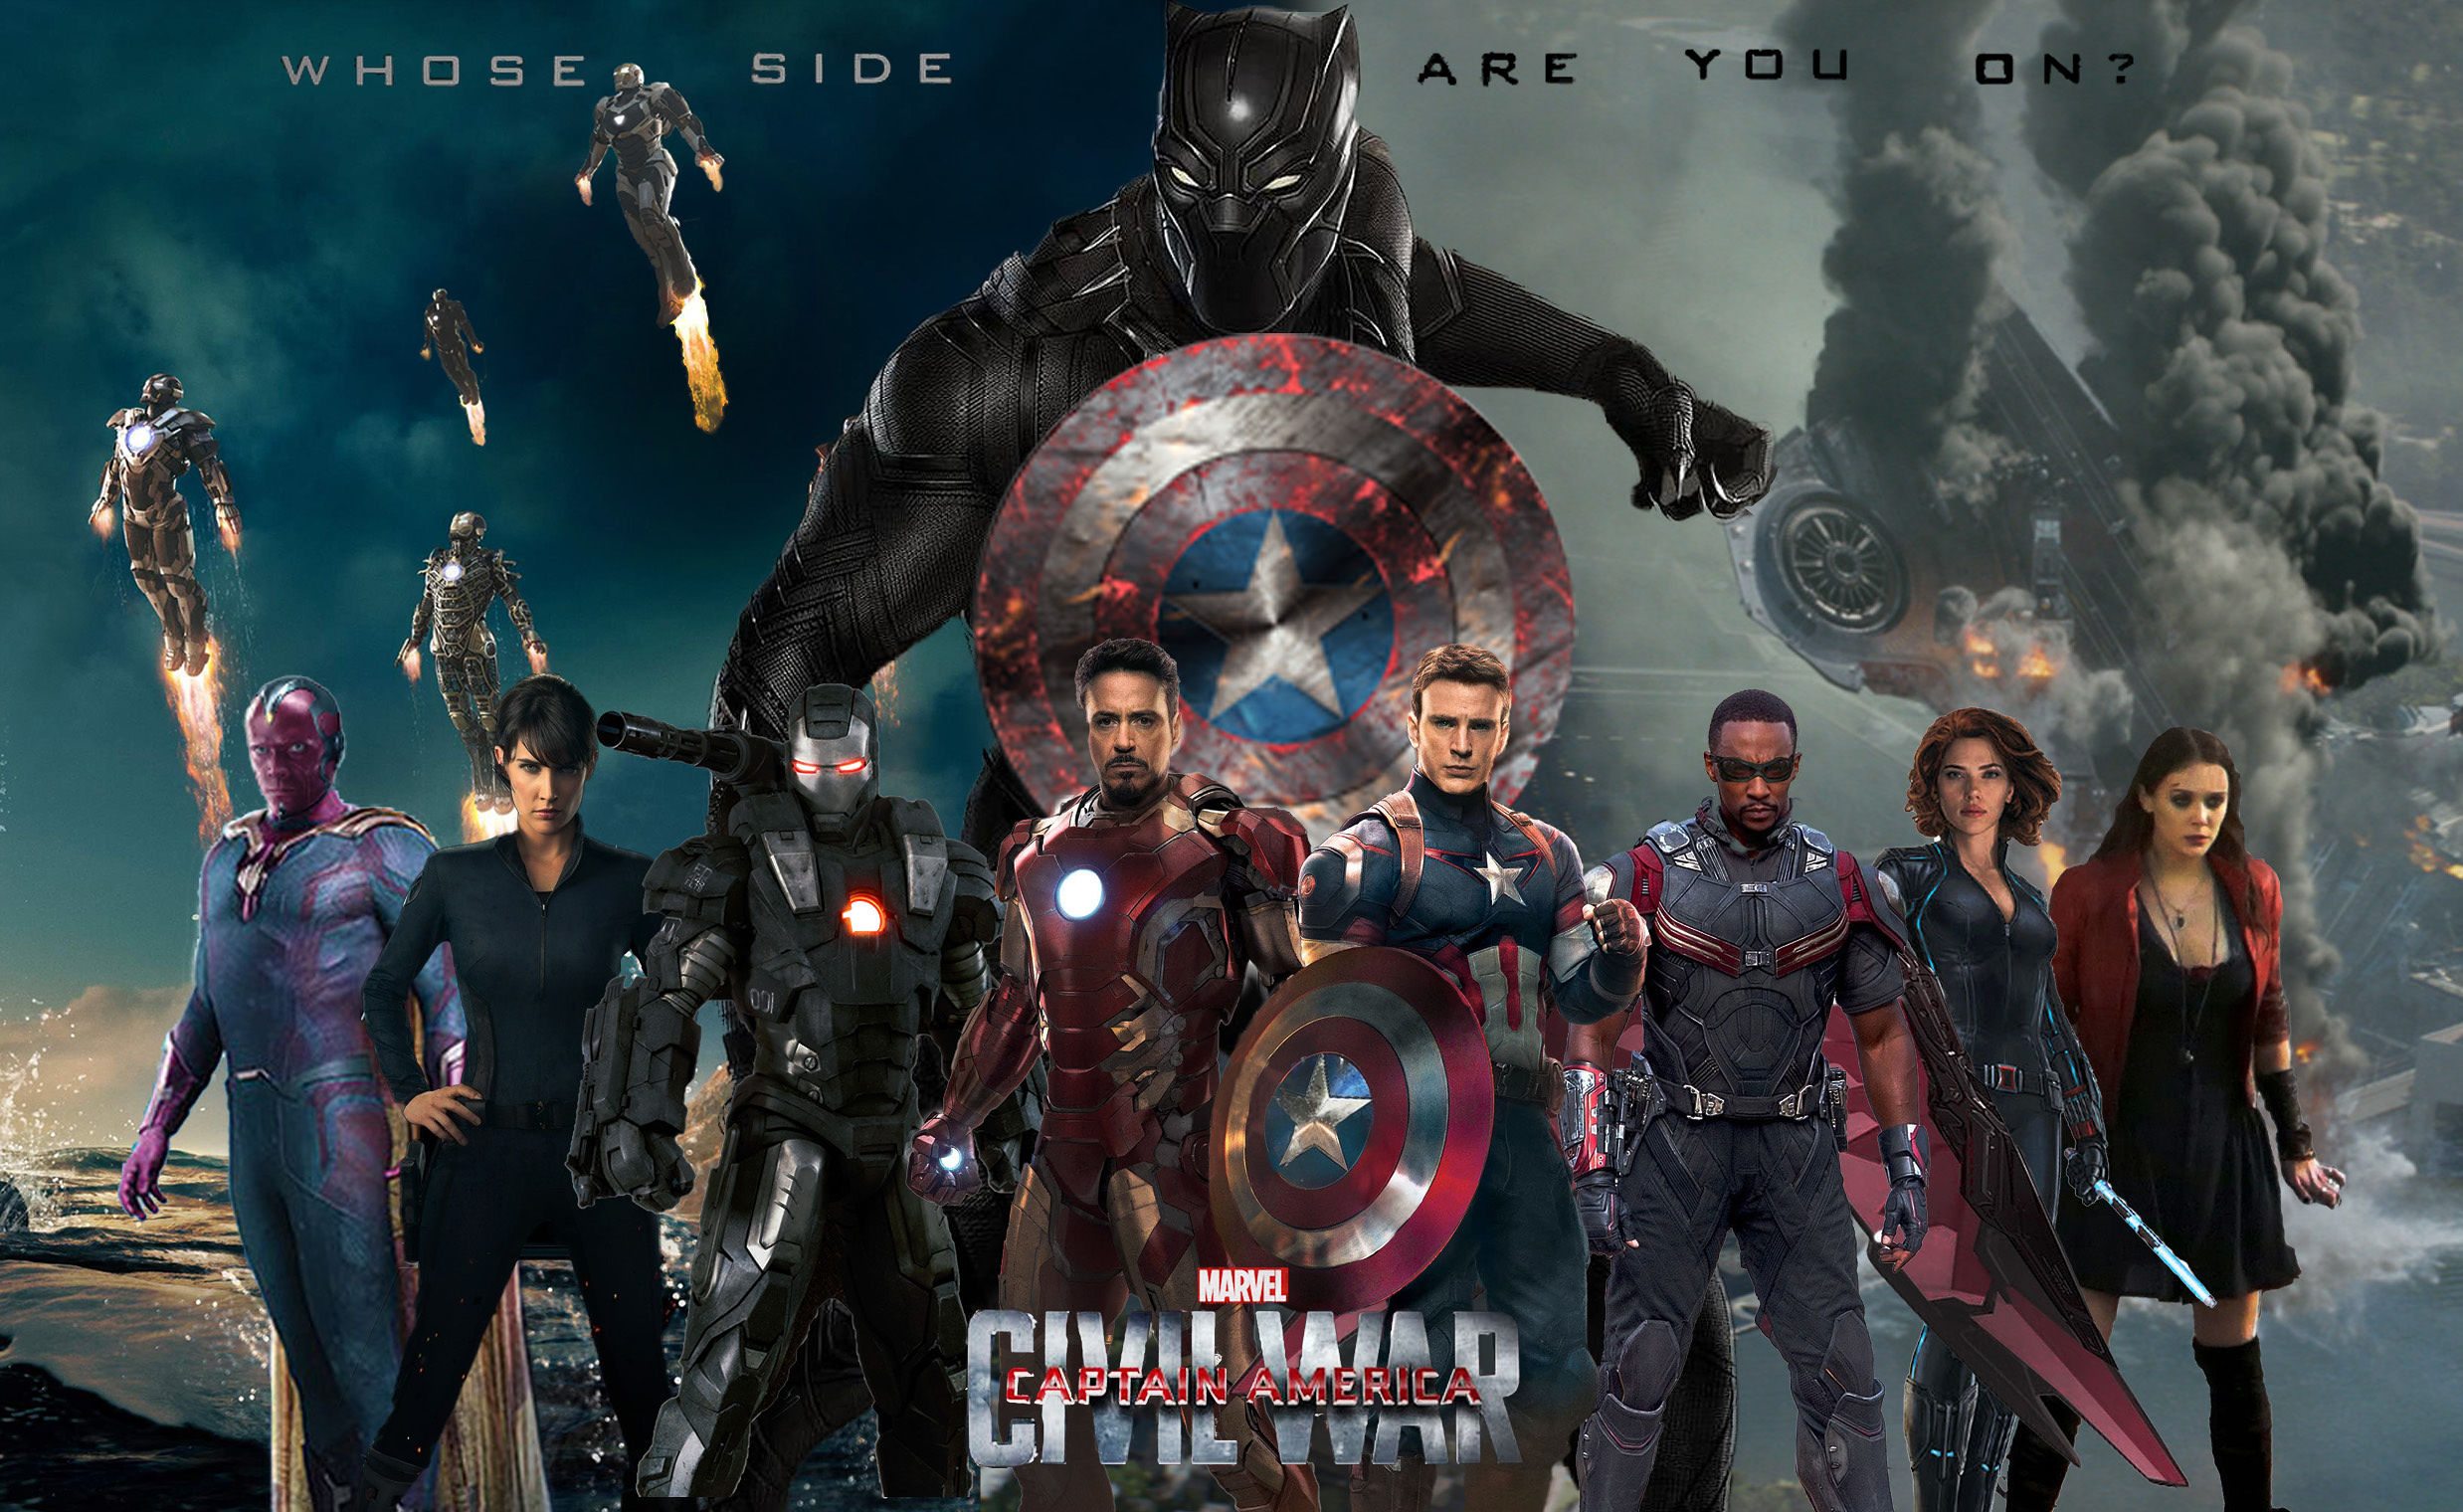 50+] Captain America Civil War Wallpaper - WallpaperSafari